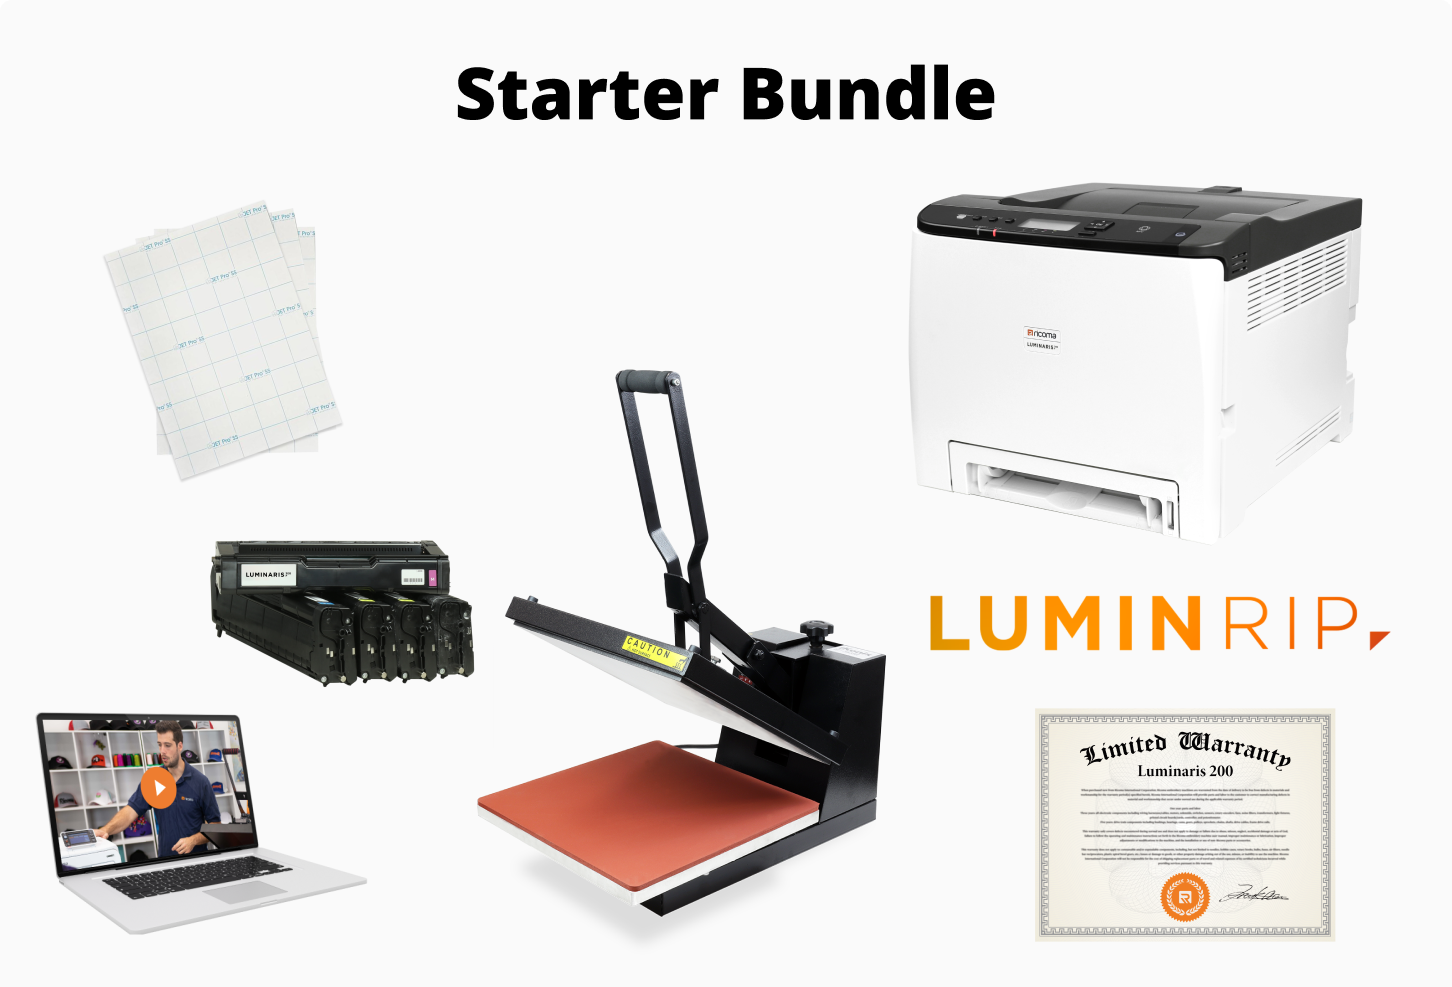 Single-head + Luminaris Premium Bundle